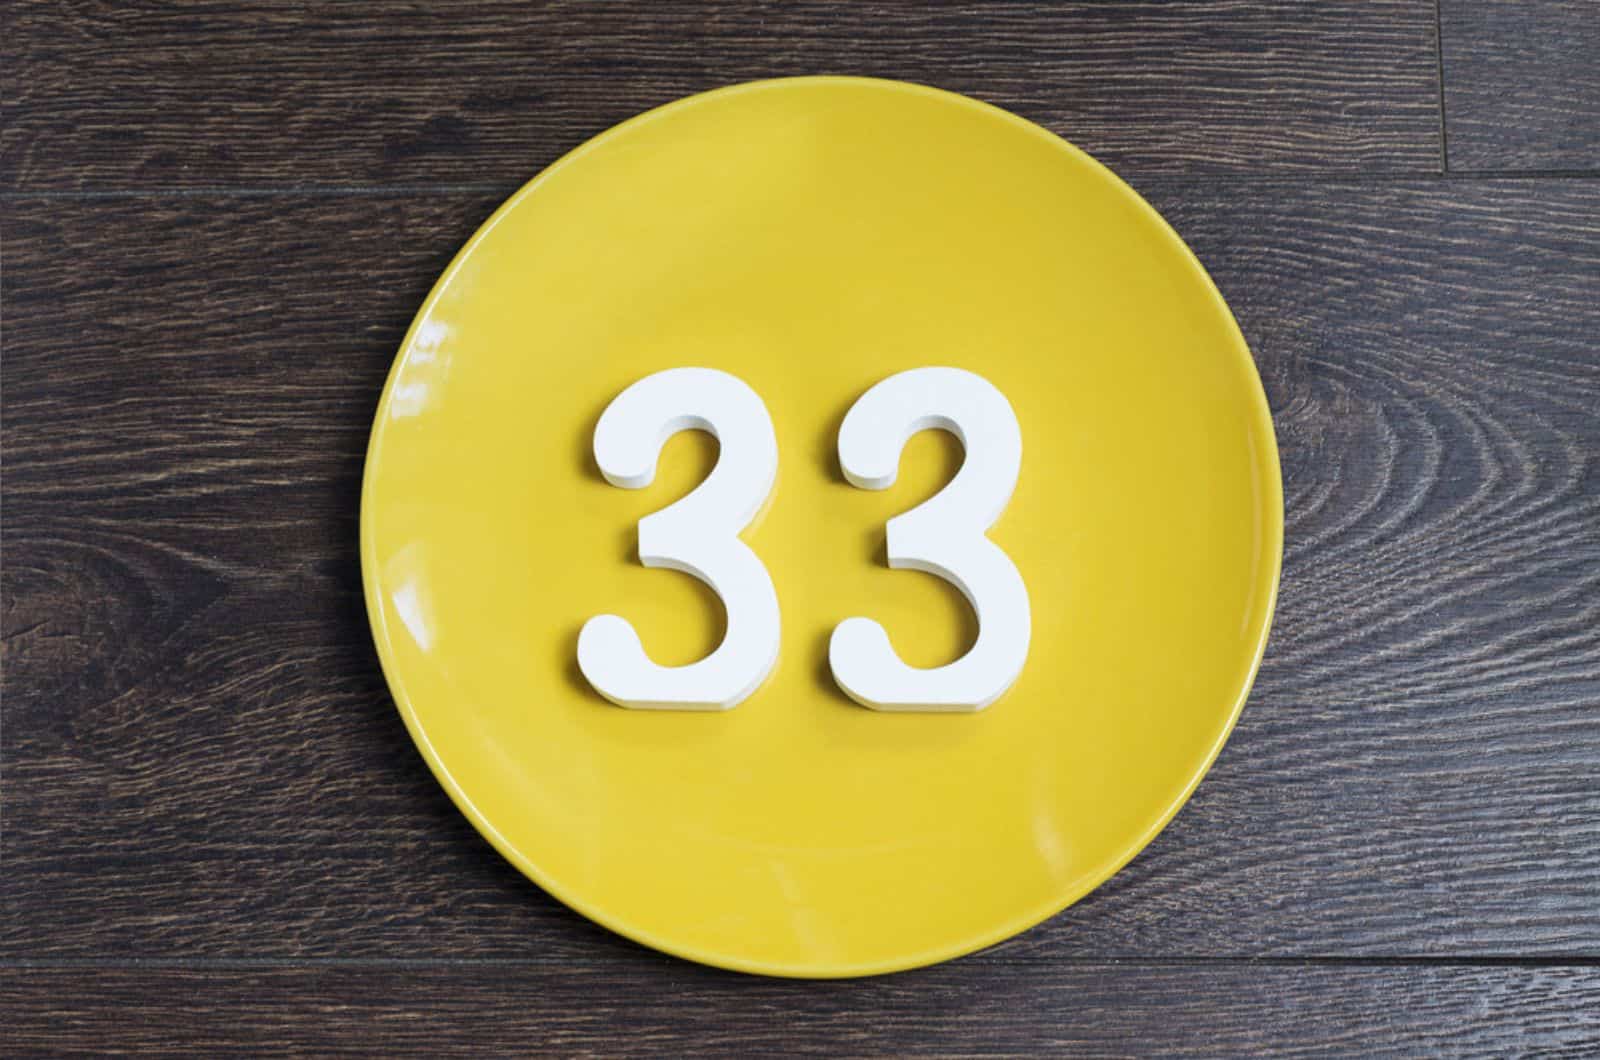 Figure trente-trois à la plaque jaune